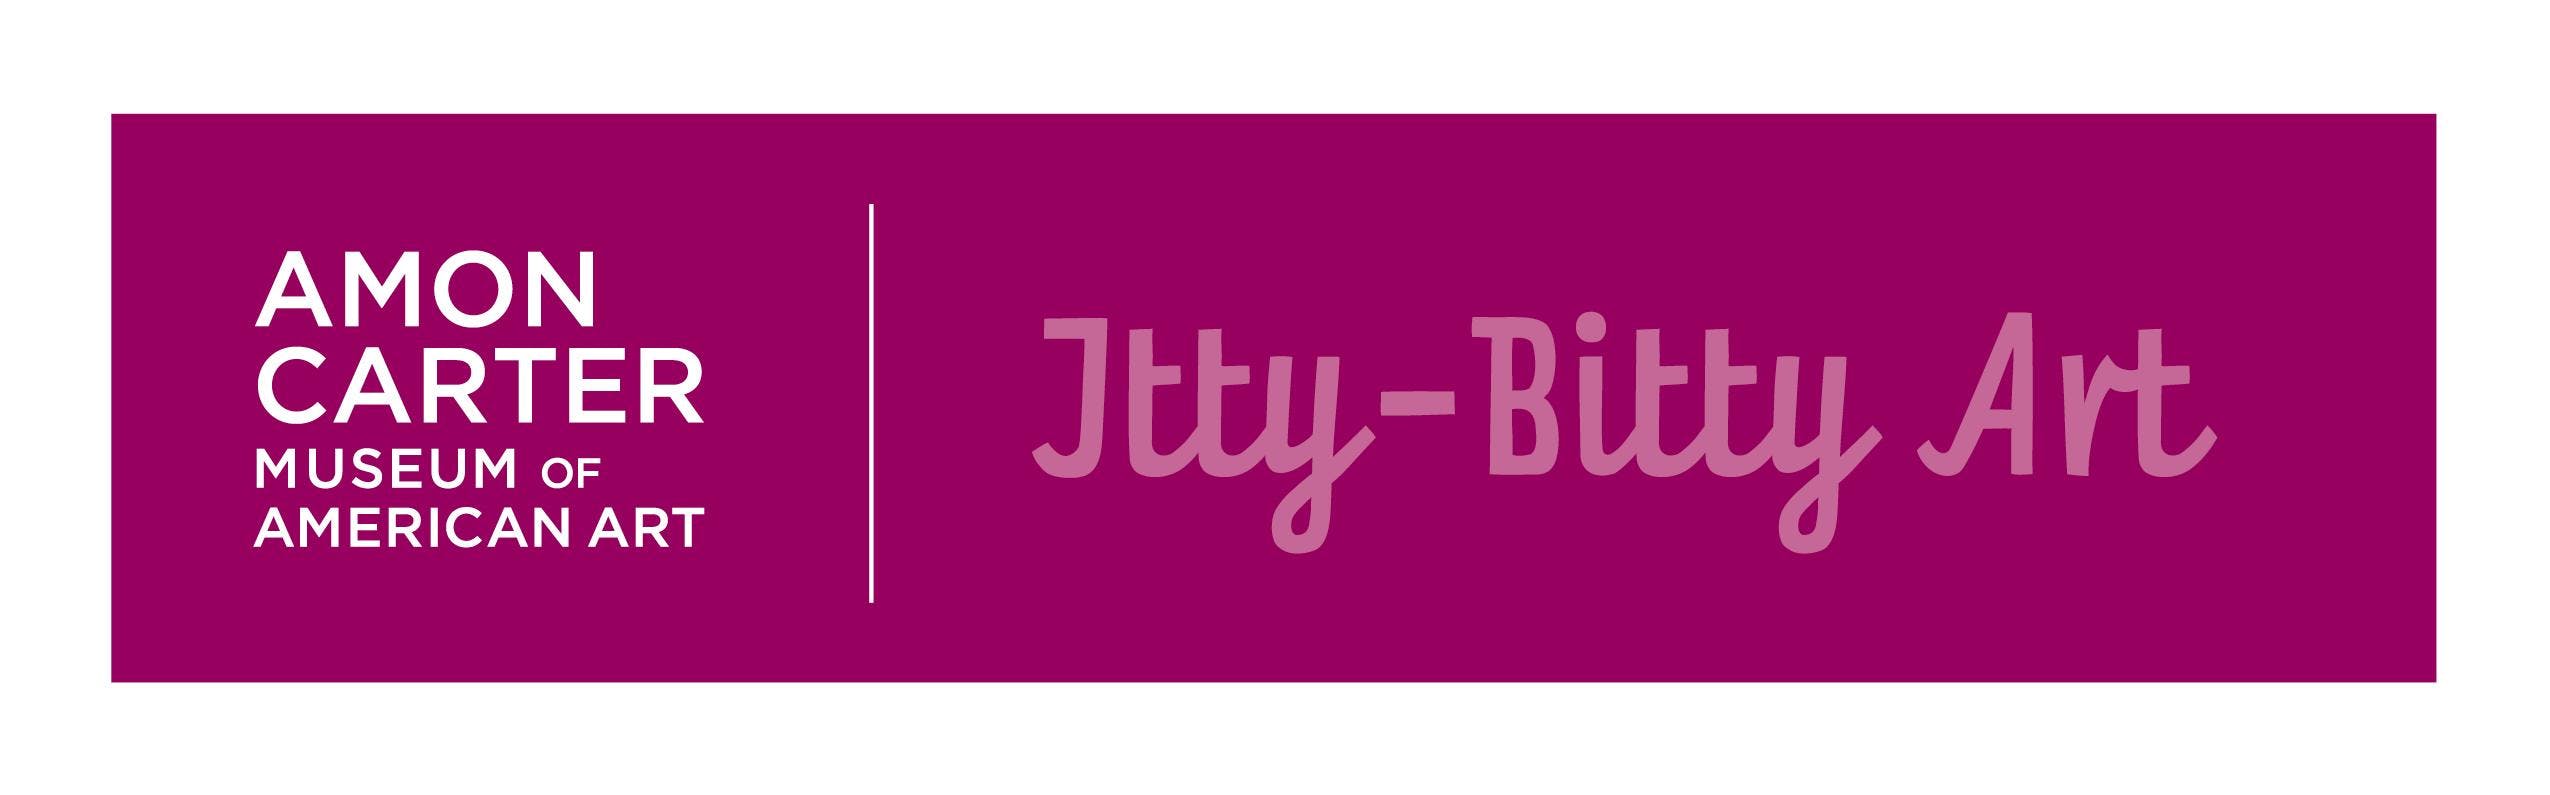 Itty-Bitty Art: Little Artists